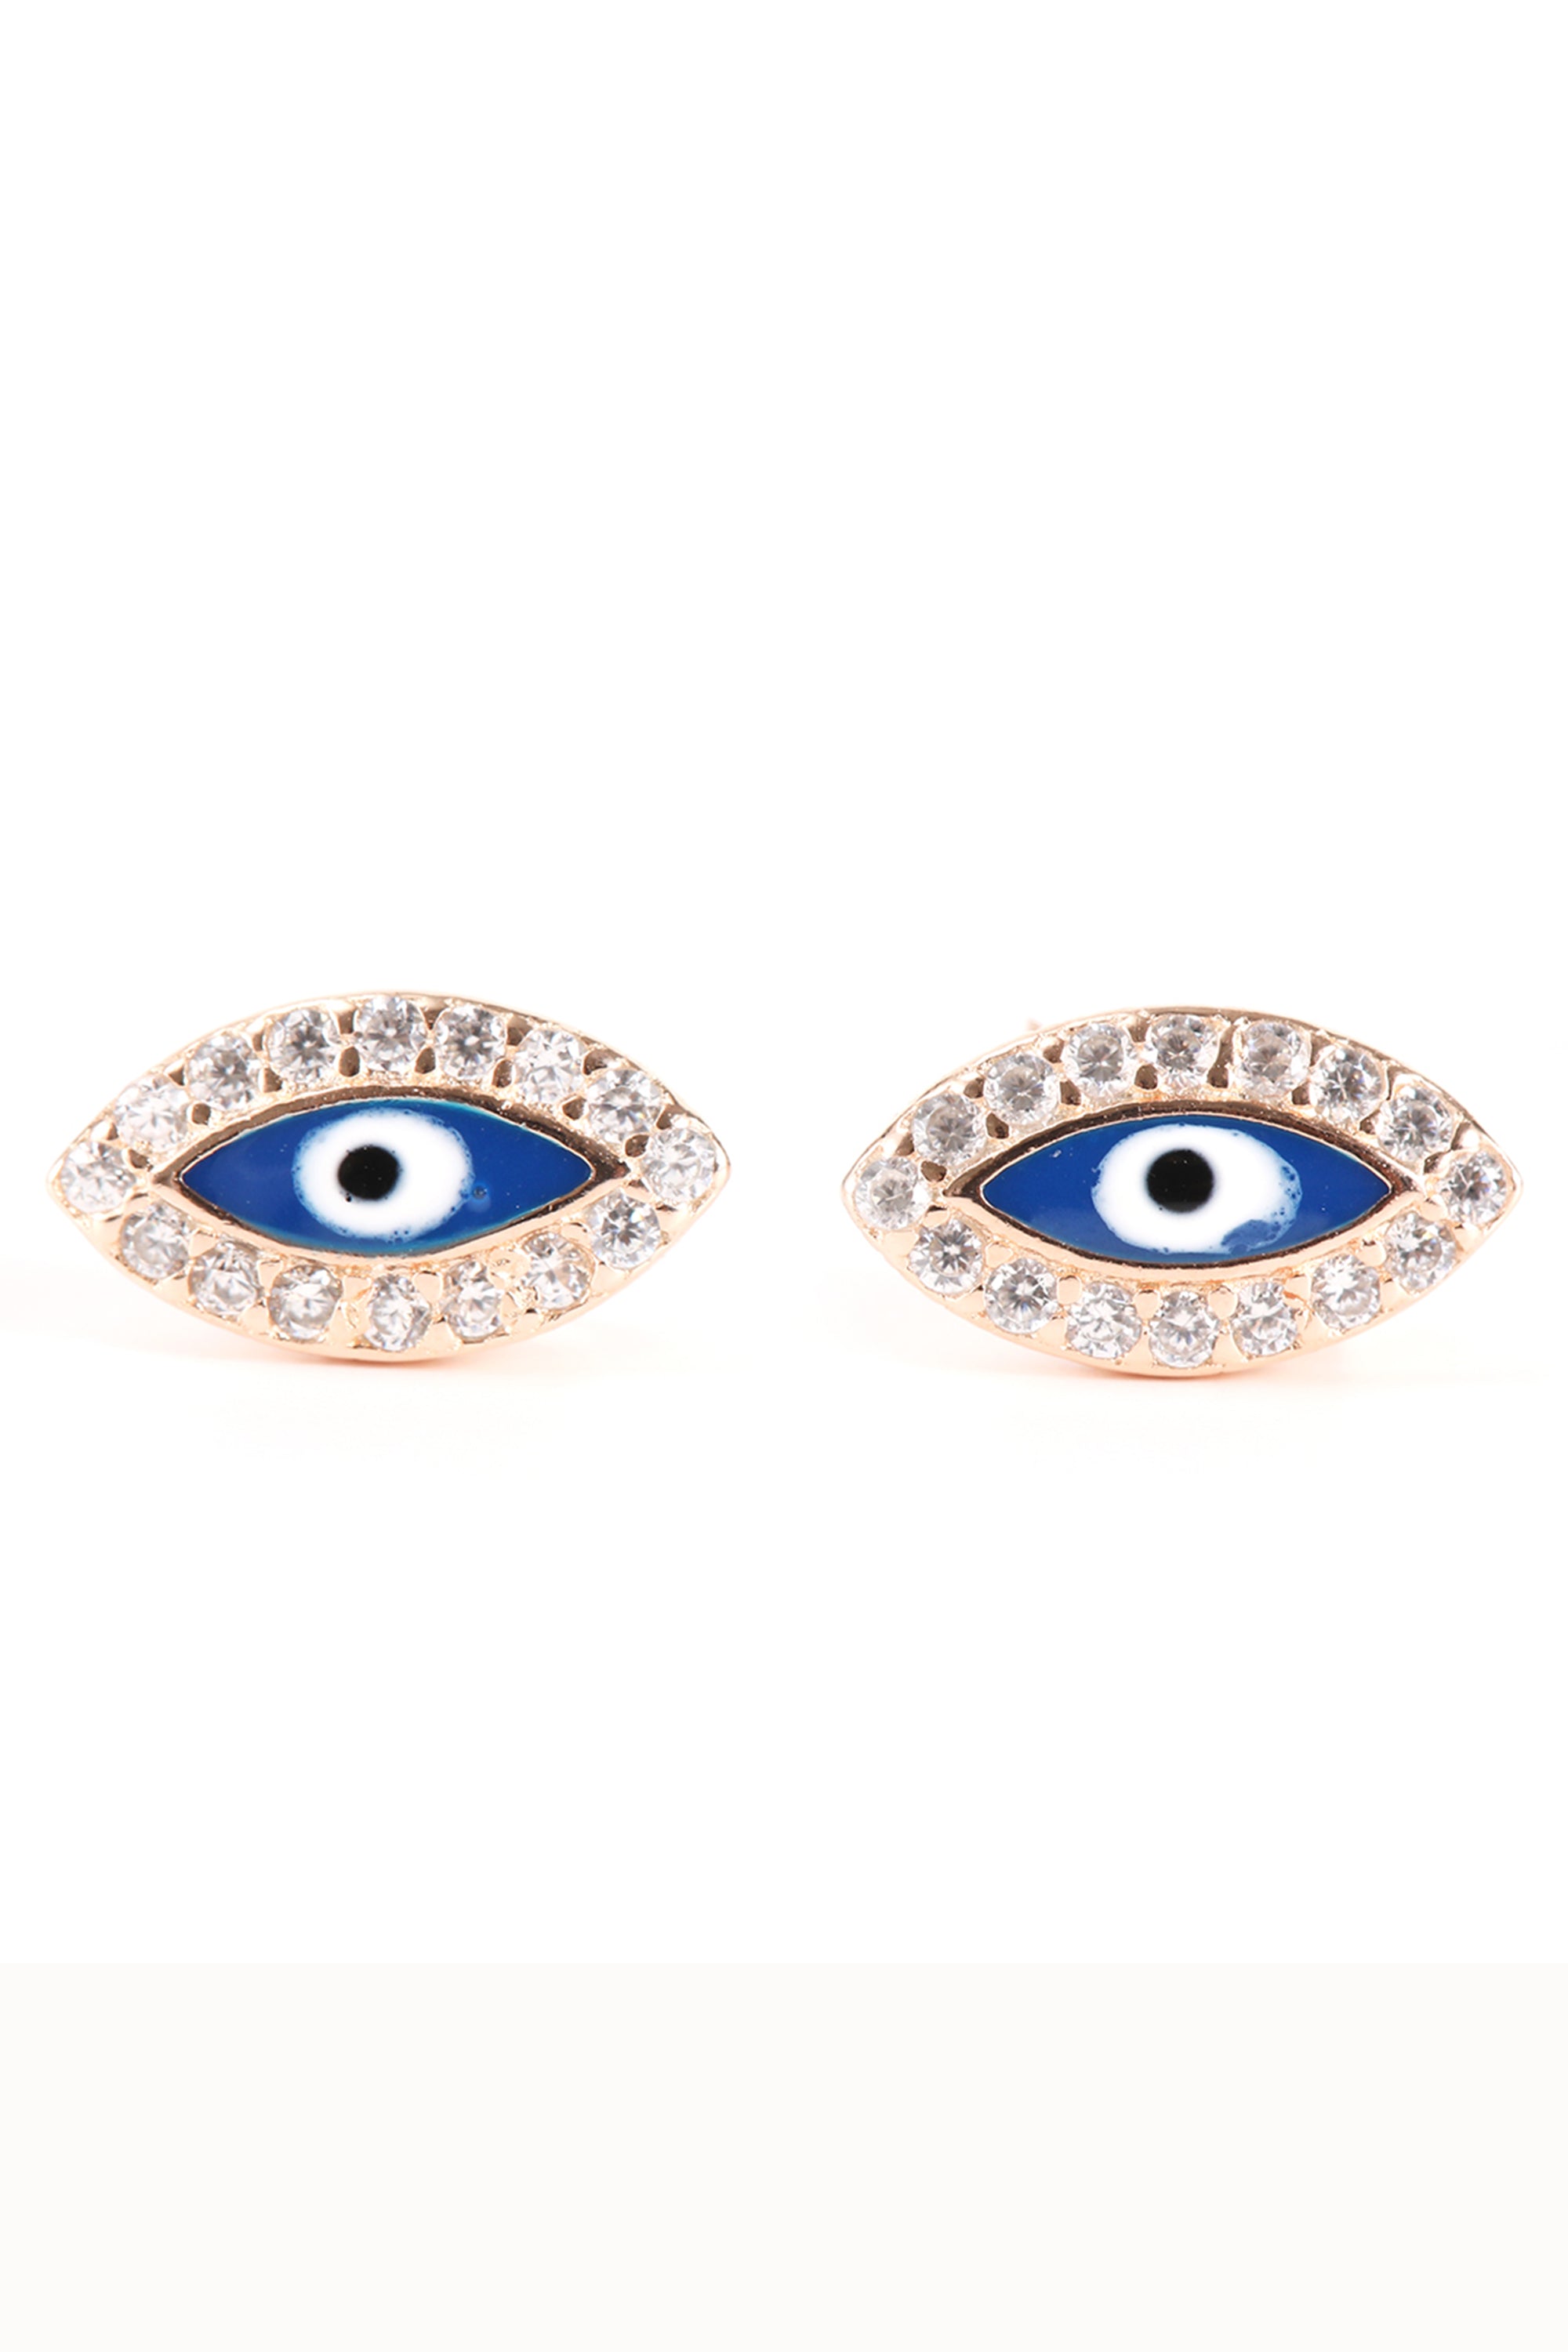 Diamond Mini Evil Eye Stud Earrings - Zoe Lev Jewelry